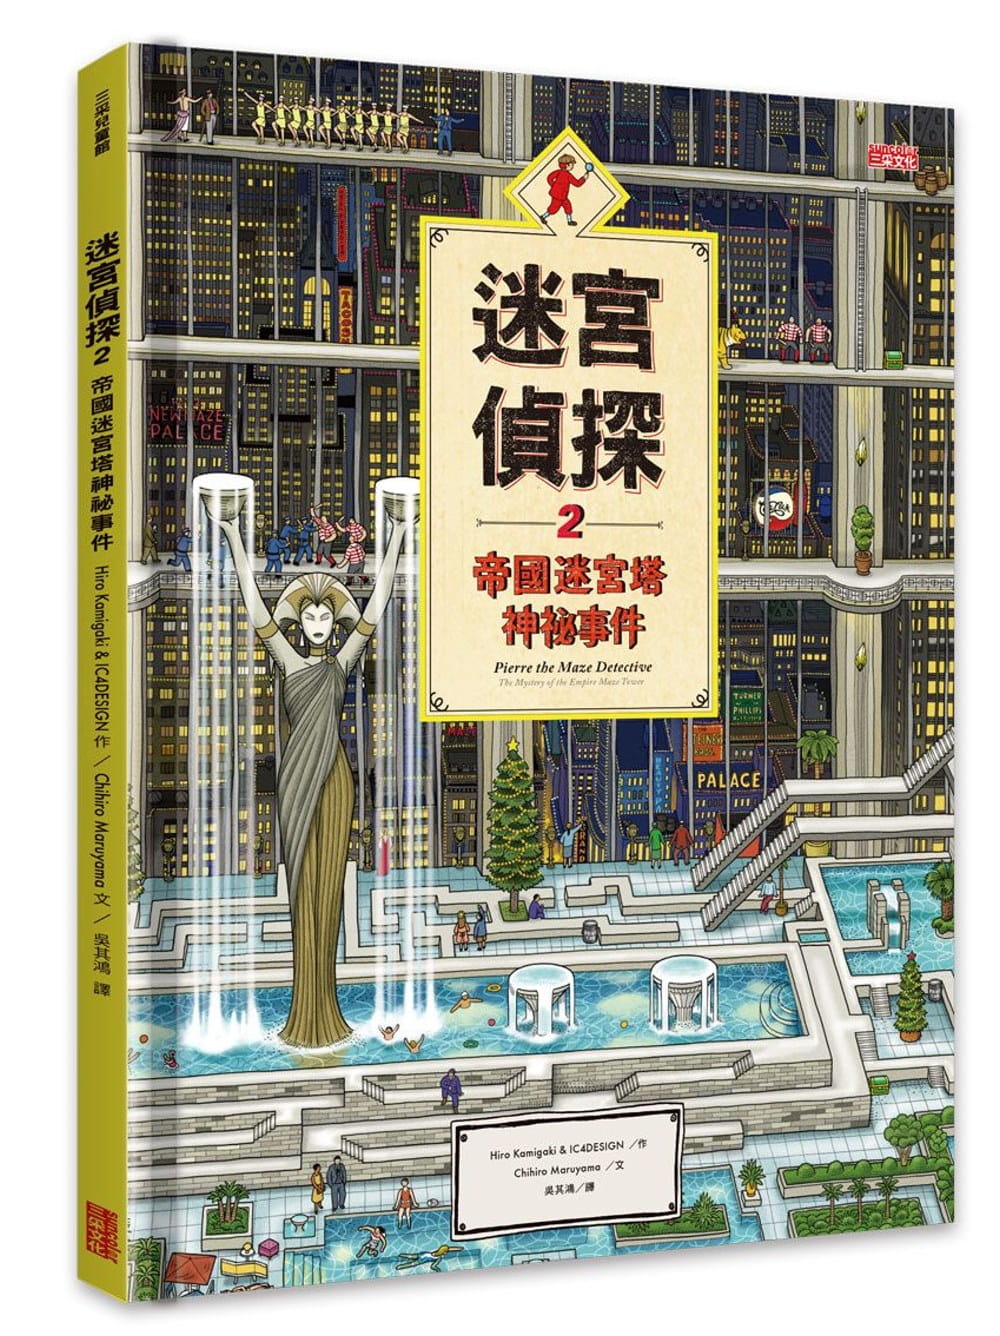 现货 Hiro Kamigaki迷宫侦探2帝国迷宫塔神秘事件三采 原版进口书 童书/青少年文学